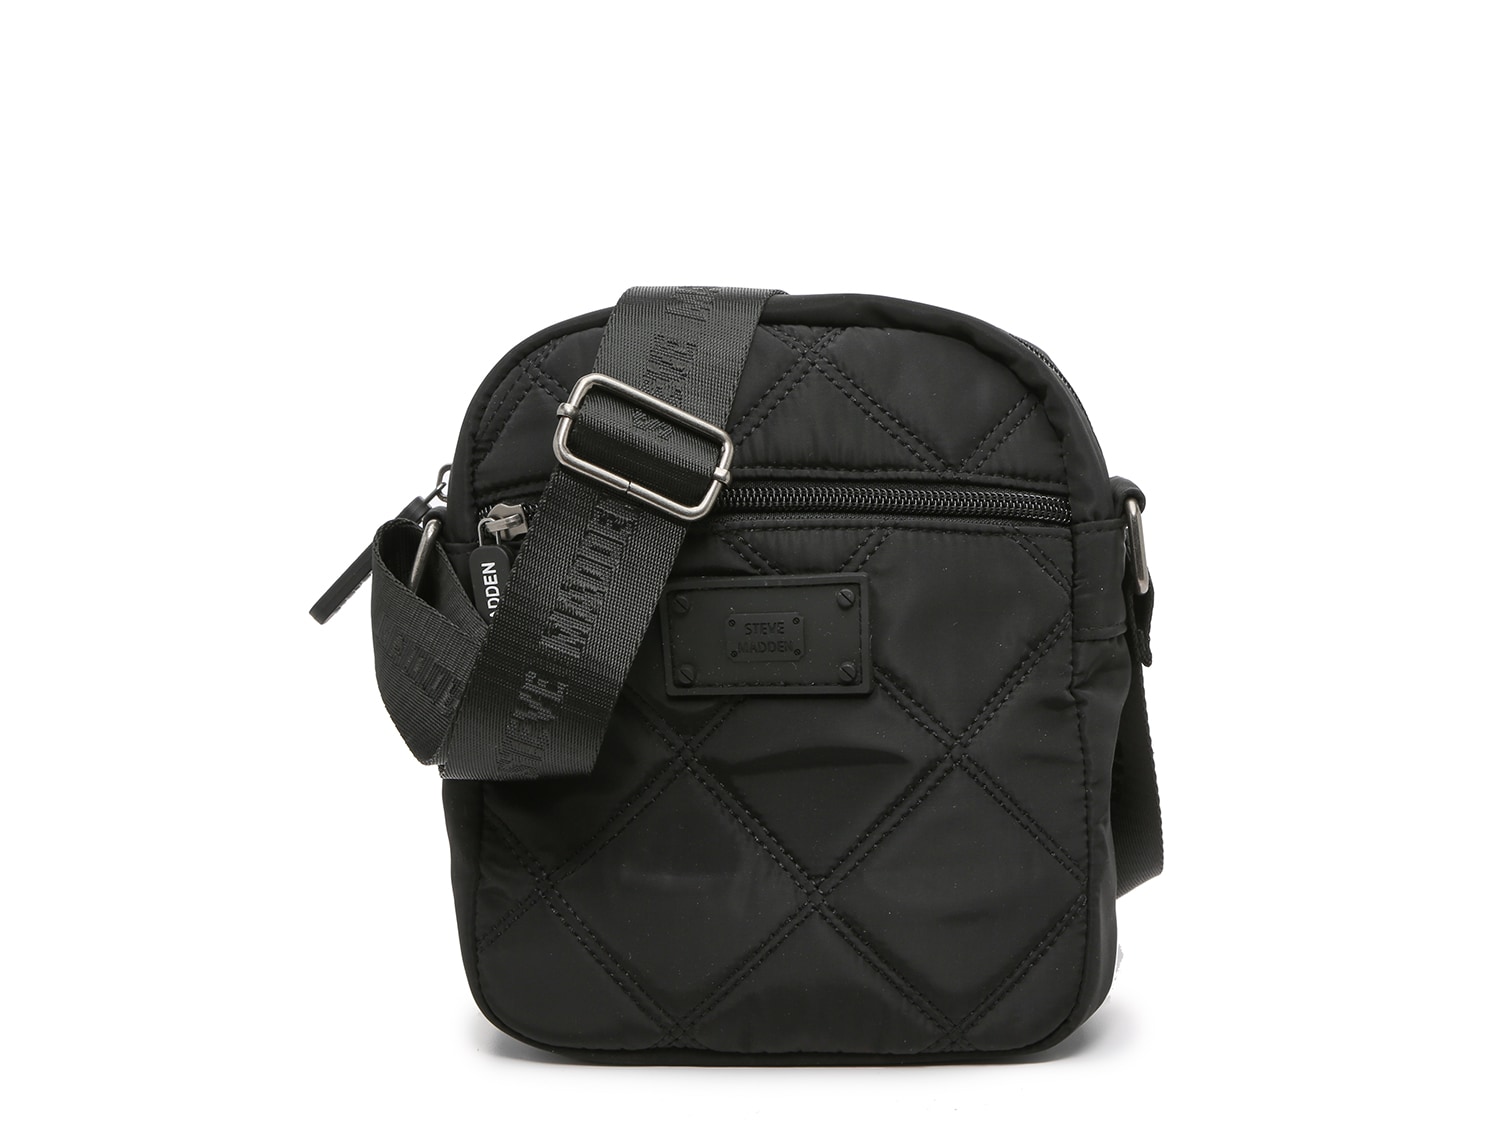 Steve Madden Rhett Double Zip Camera Bag in Black